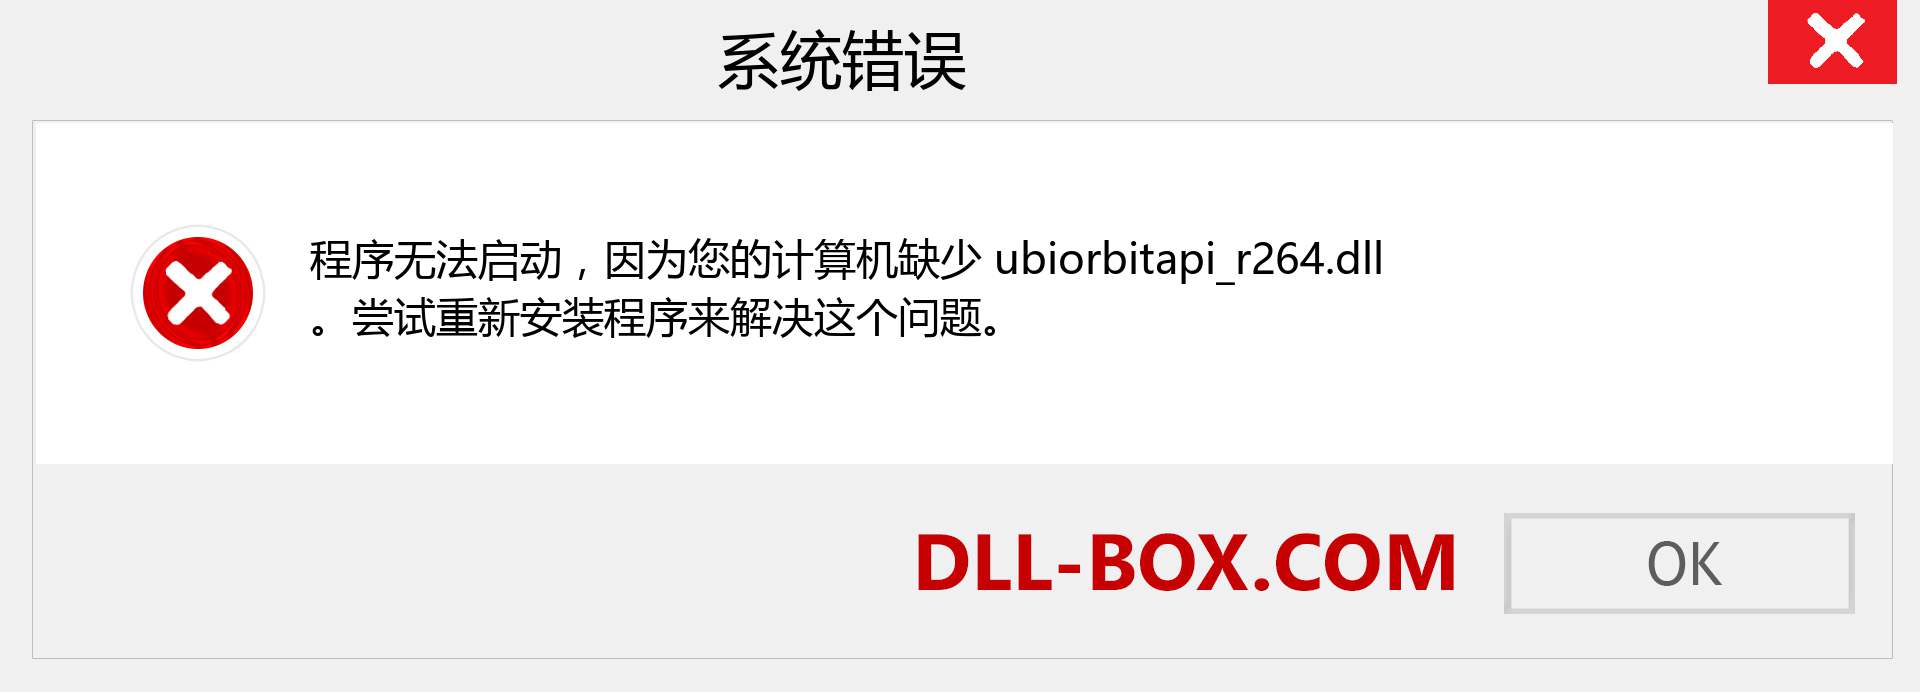 ubiorbitapi_r264.dll 文件丢失？。 适用于 Windows 7、8、10 的下载 - 修复 Windows、照片、图像上的 ubiorbitapi_r264 dll 丢失错误